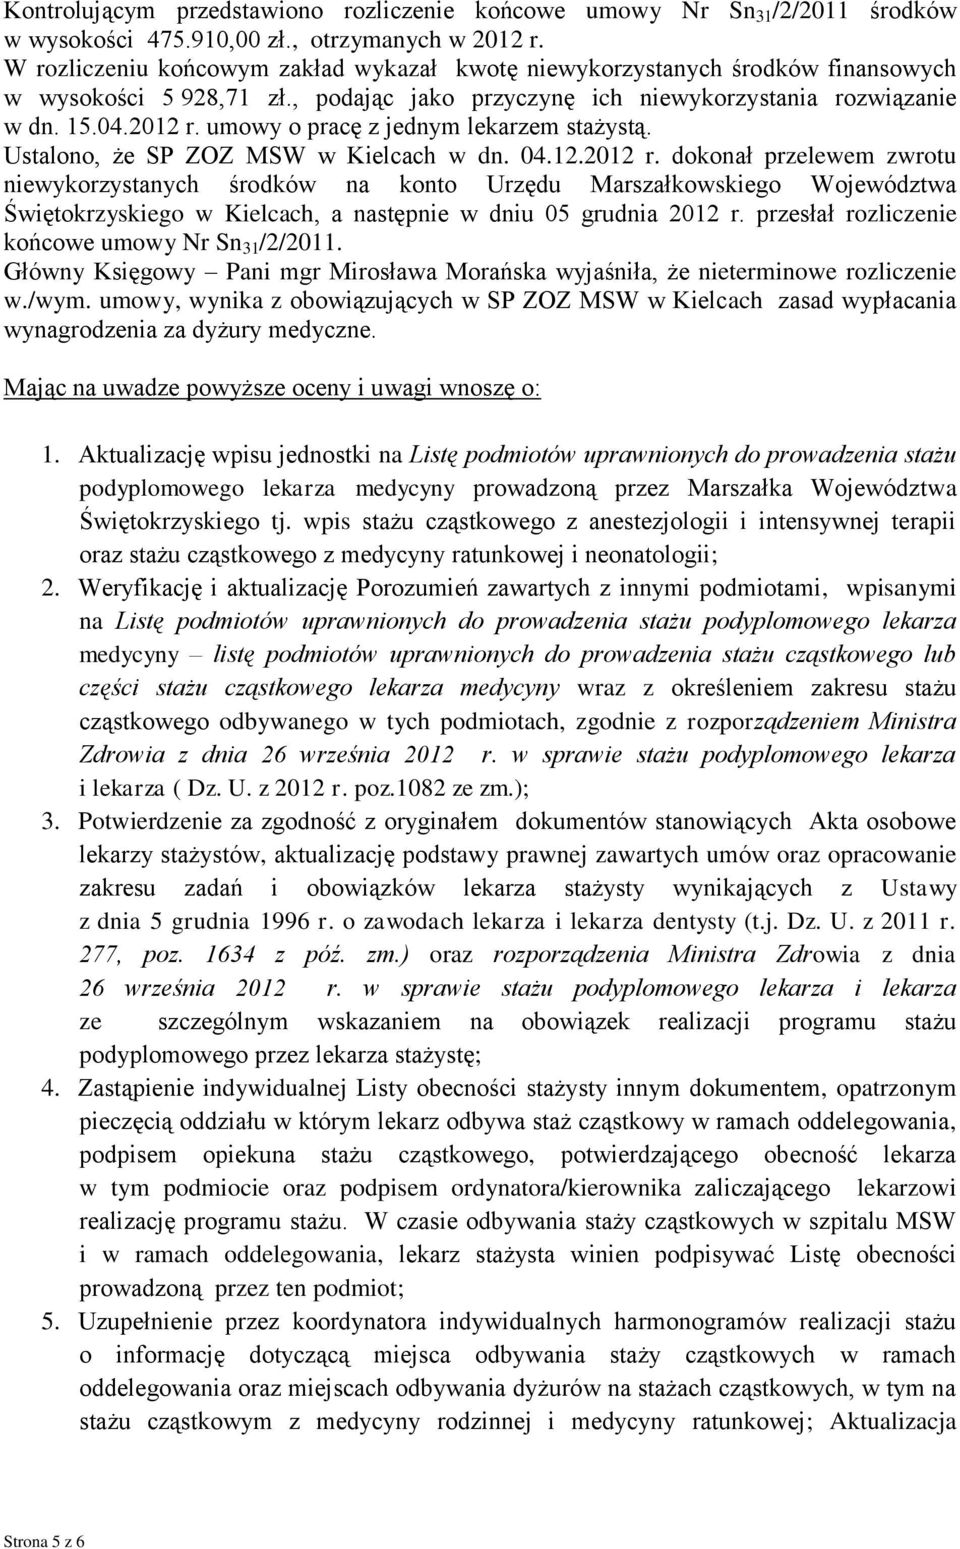 umowy o pracę z jednym lekarzem stażystą. Ustalono, że SP ZOZ MSW w Kielcach w dn. 04.12.2012 r.